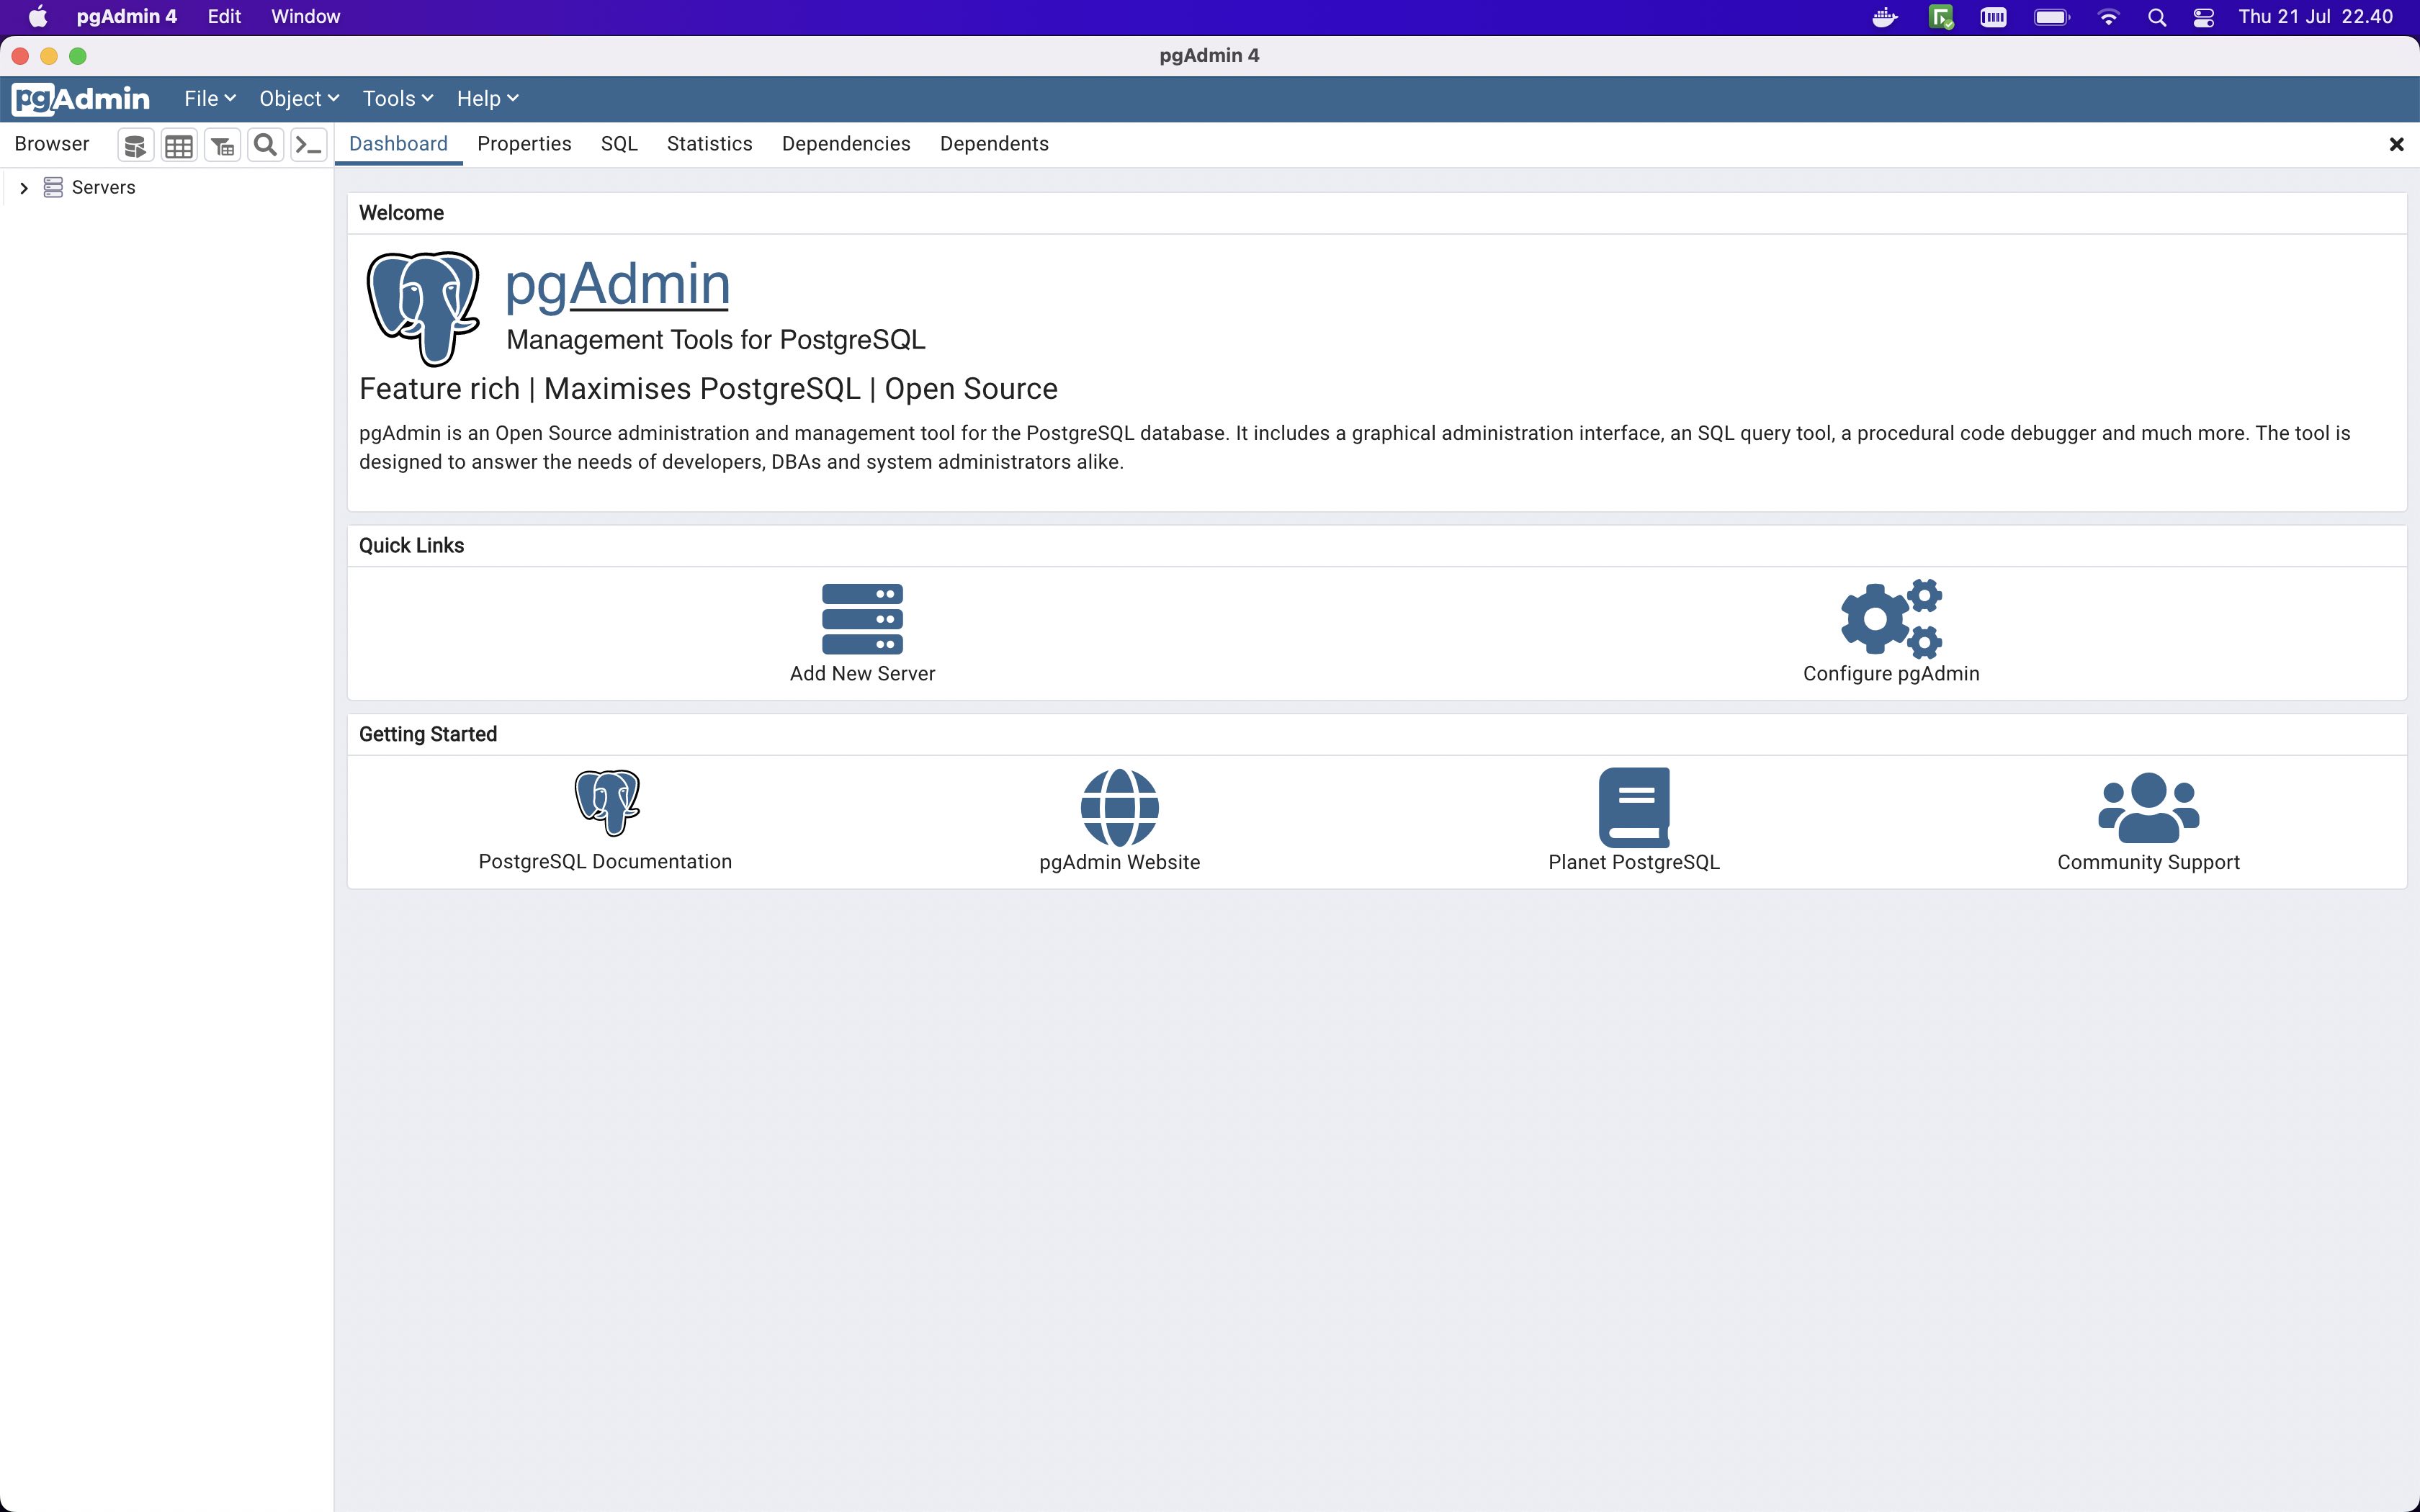 PgAdmin 4 Dashboard Interface